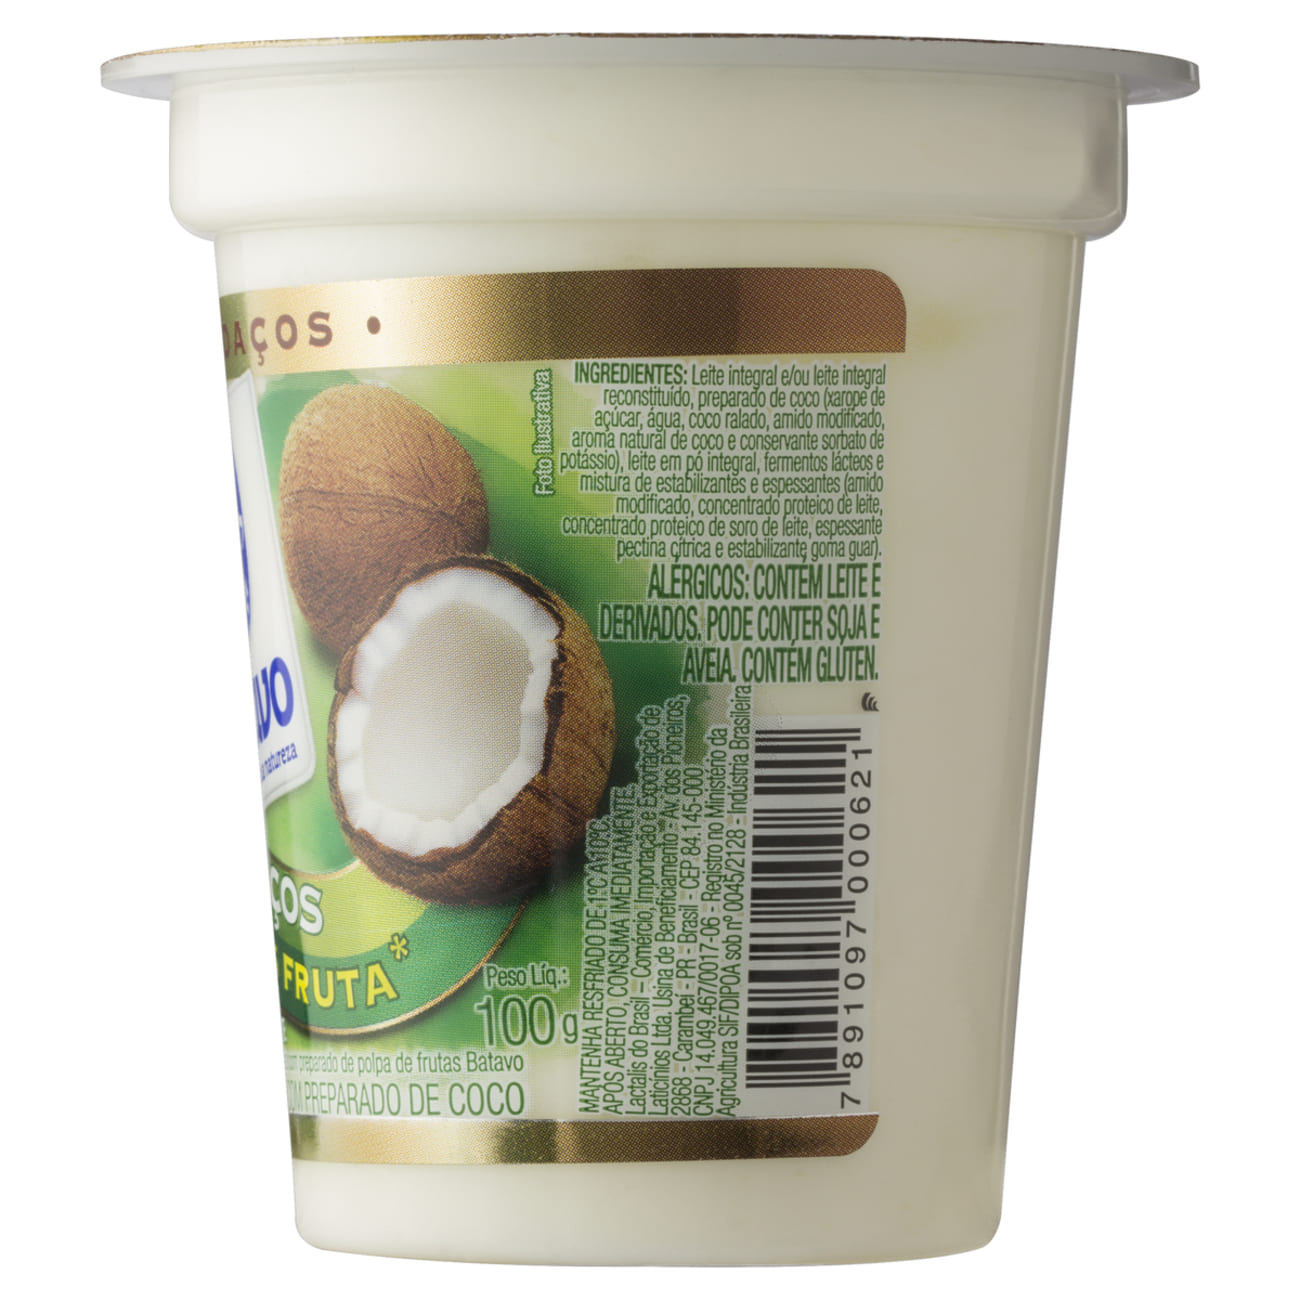 Iogurte Integral com Preparado e Pedaos de Coco Batavo Pedaos Copo 100g